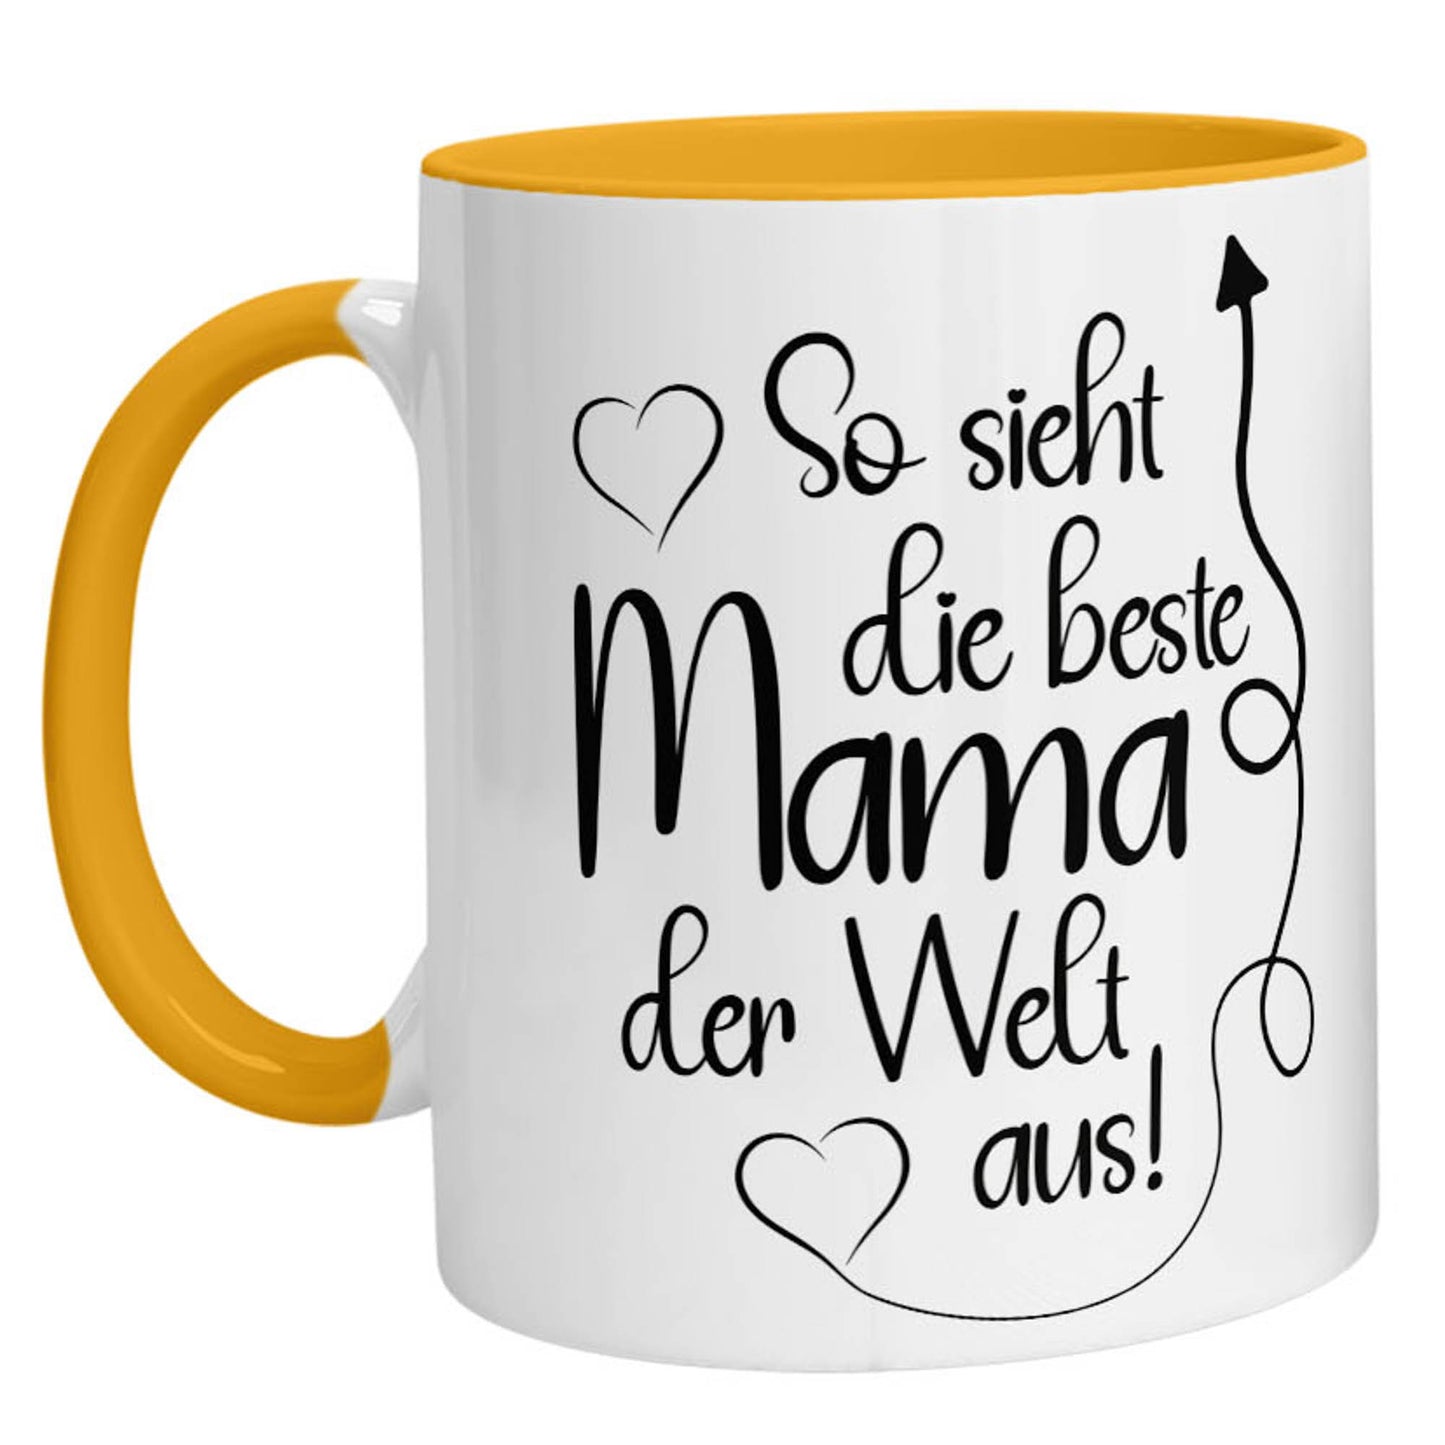 Tasse - So sieht die beste Mama der Welt aus